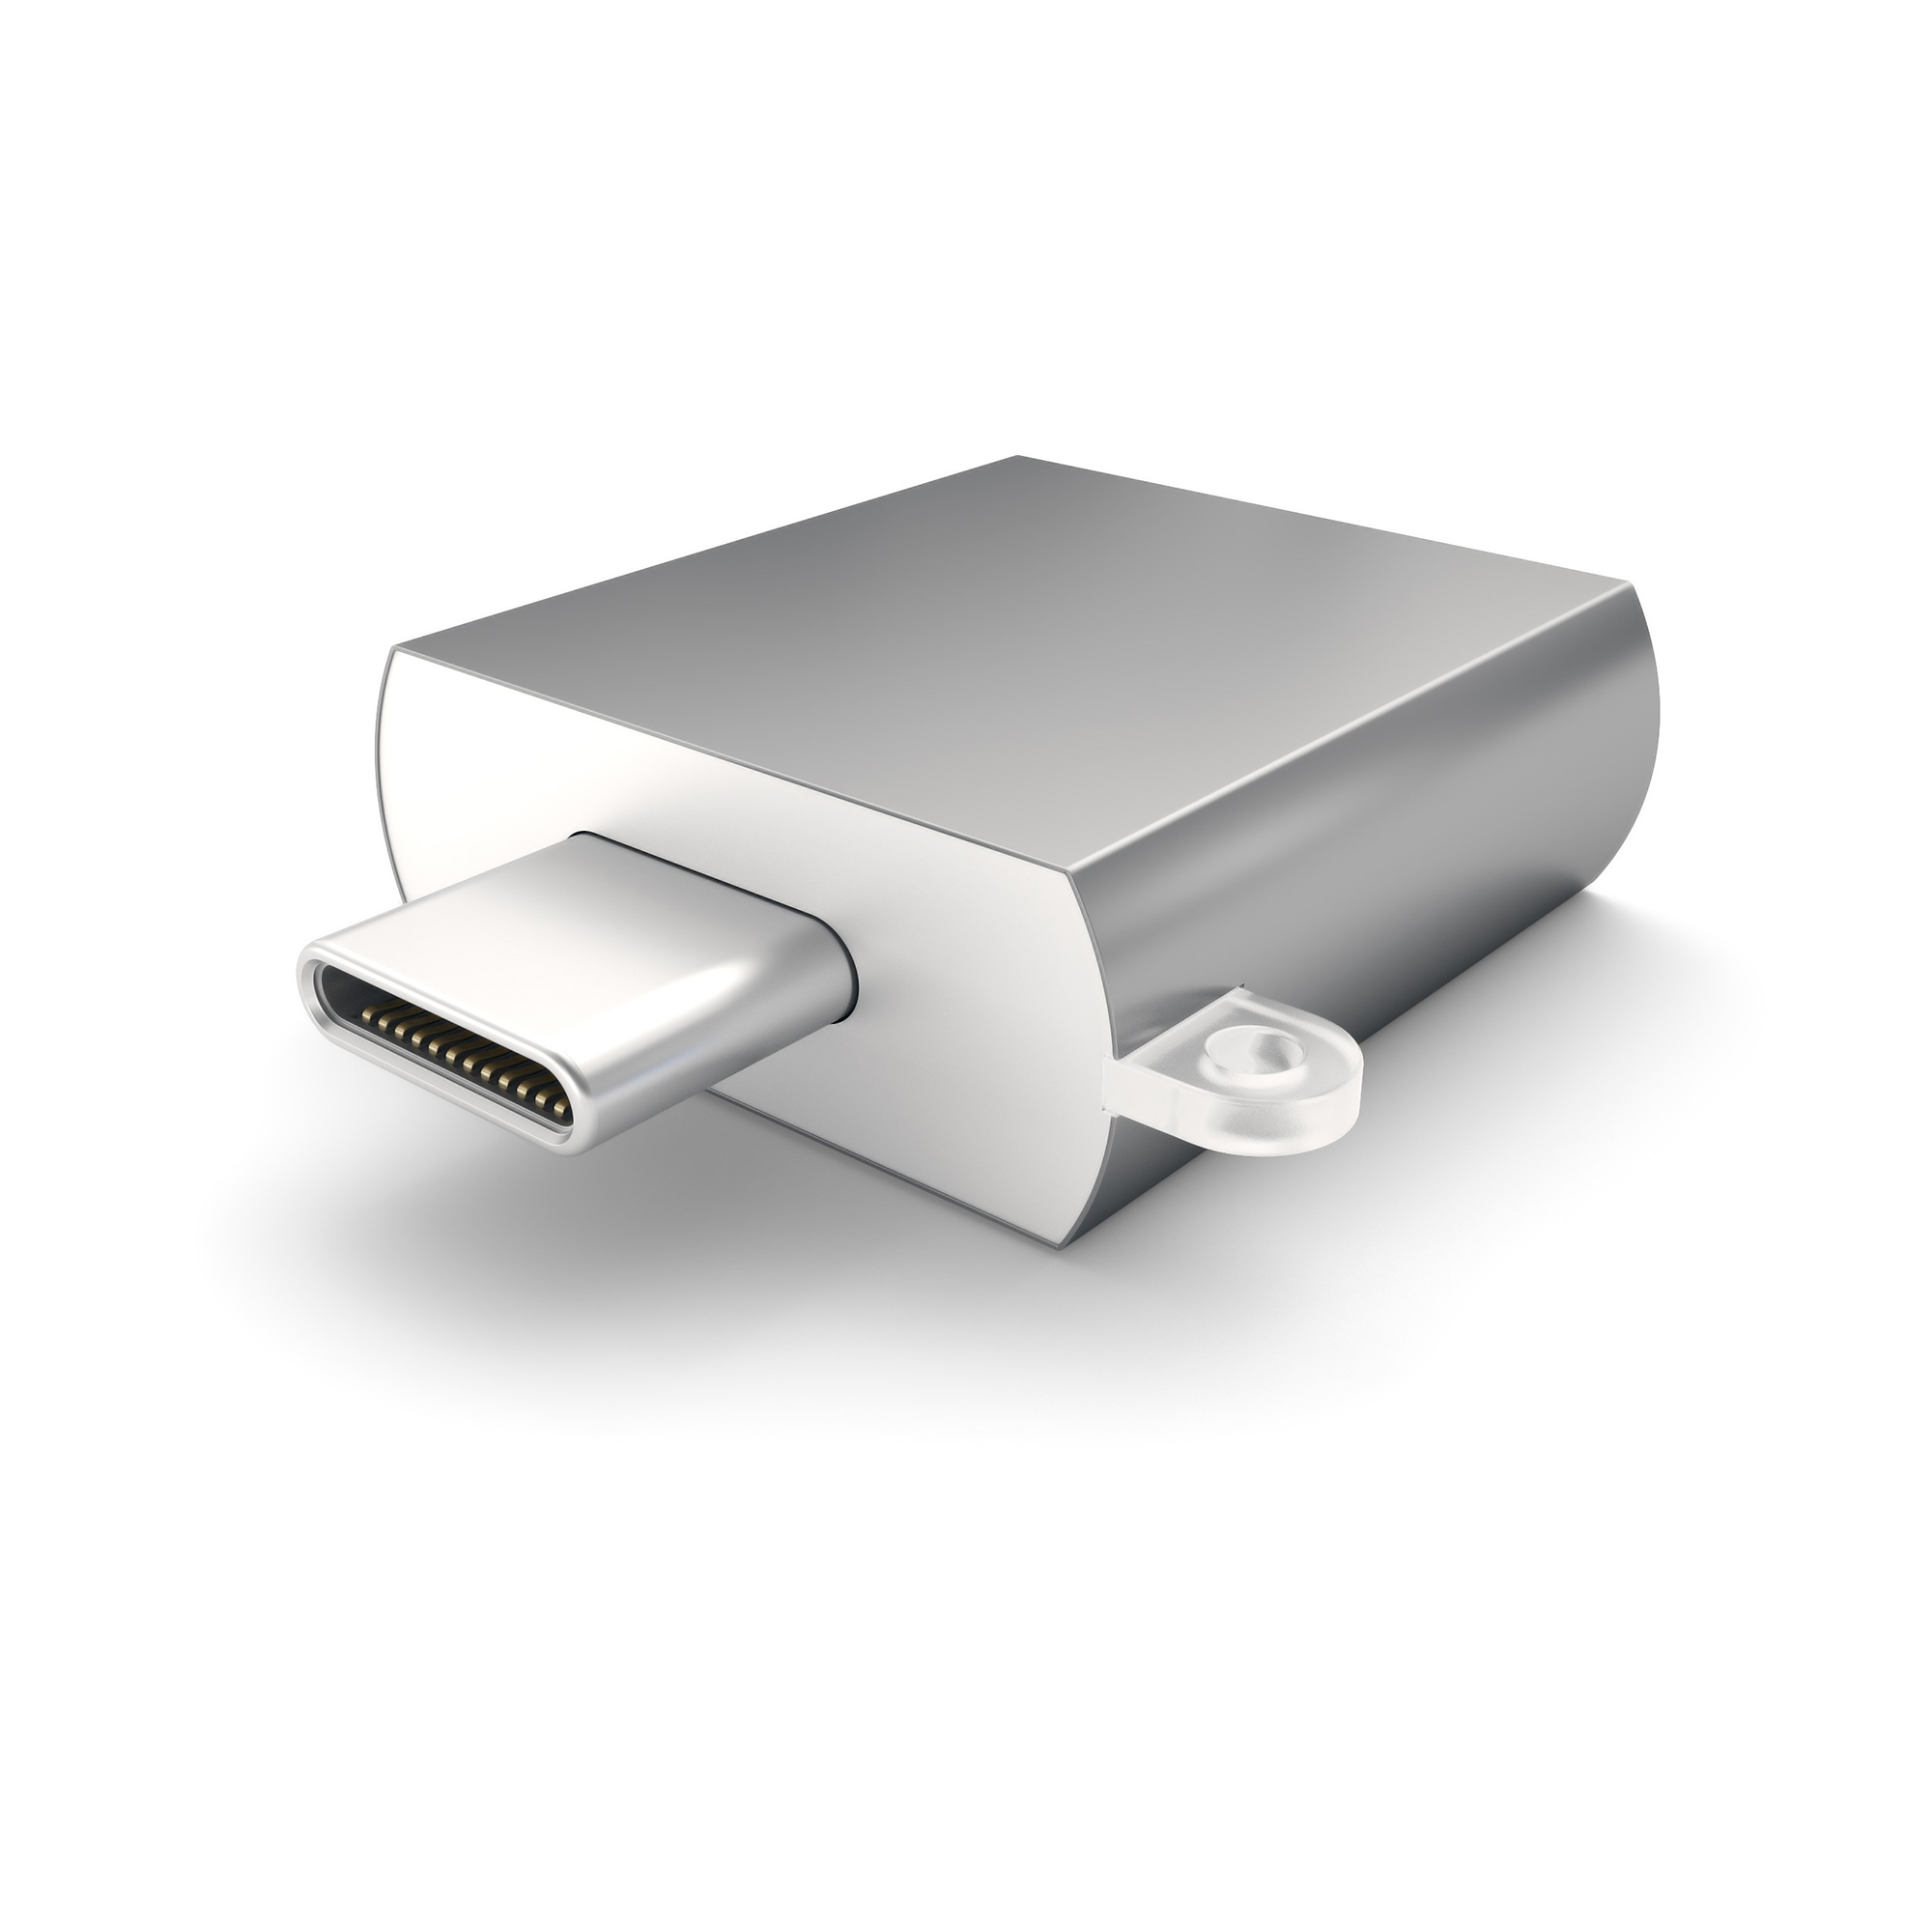 Адаптер Satechi USB 3.0 Type-C to USB 3.0 Type-A Space Gray ST-TCUAM док станция satechi type c